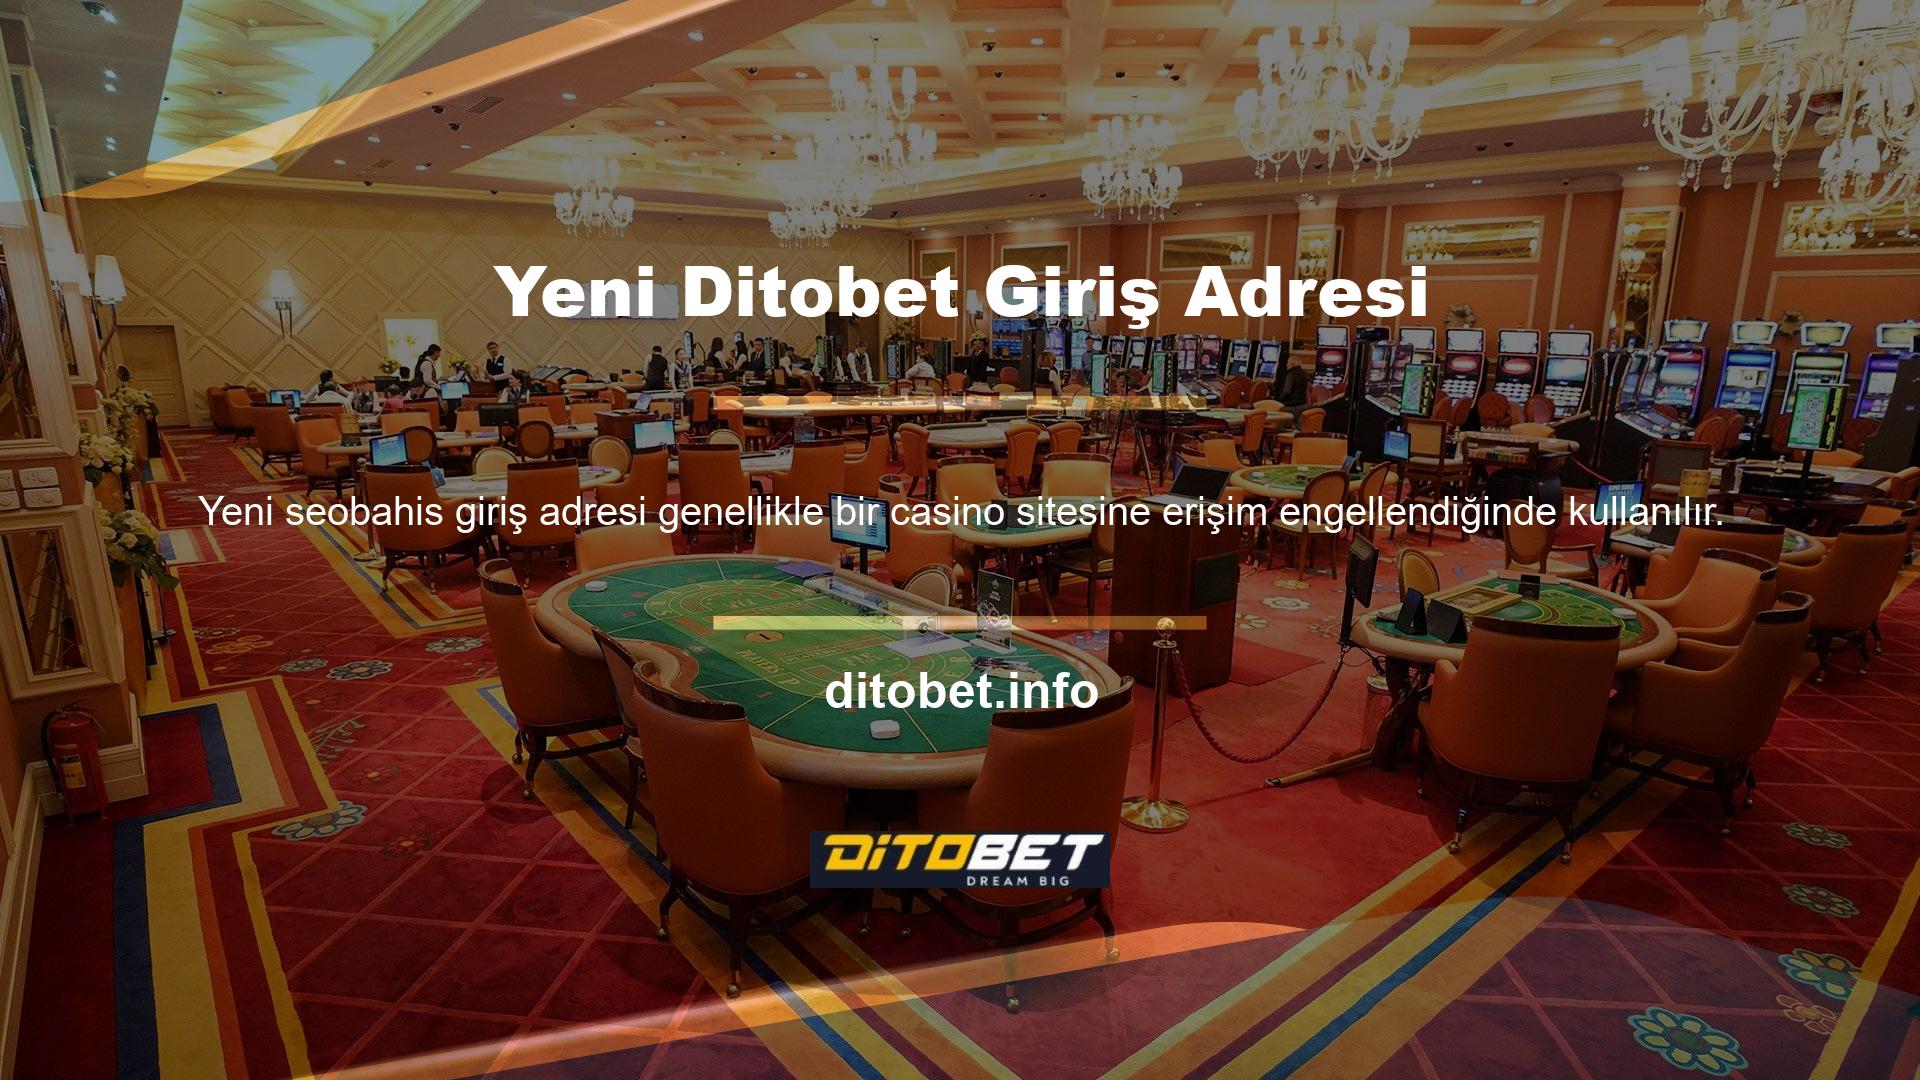 Yeni Ditobet Giriş Adresi Bahis, çevrimiçi casino tutkunlarını barındıran ve hizmet veren bir web sitesidir